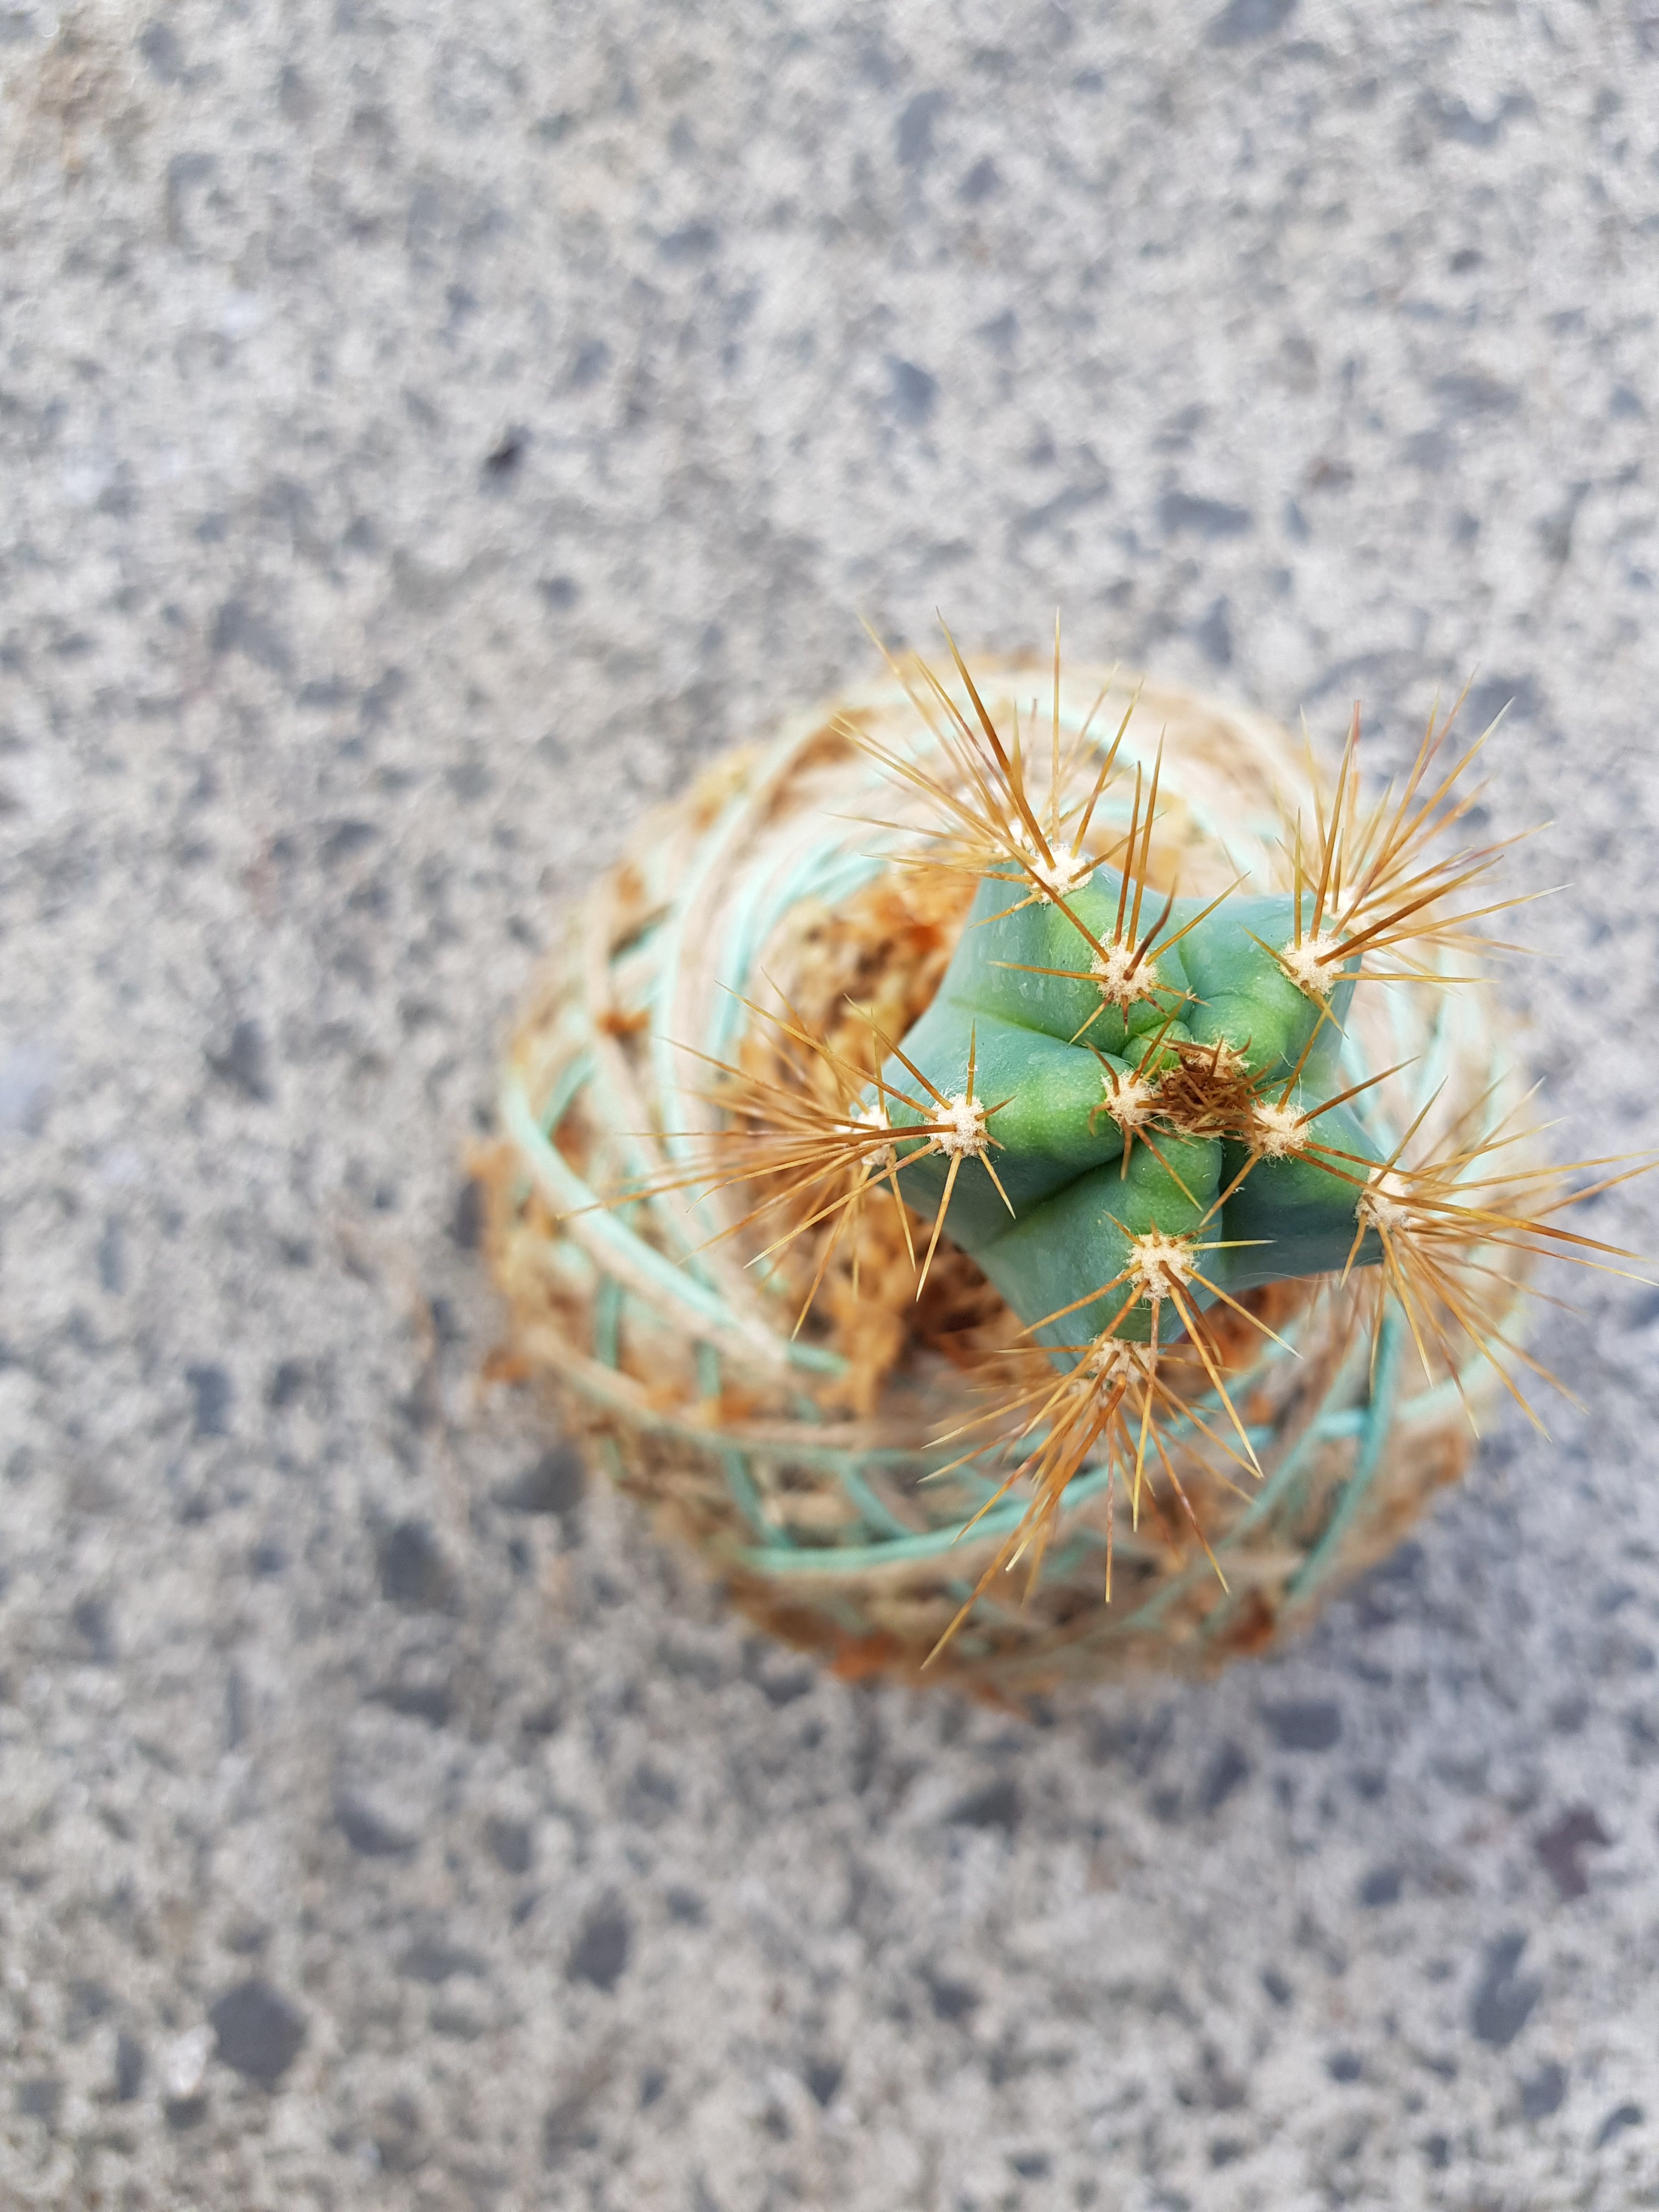 Cactus Kokedama Mini